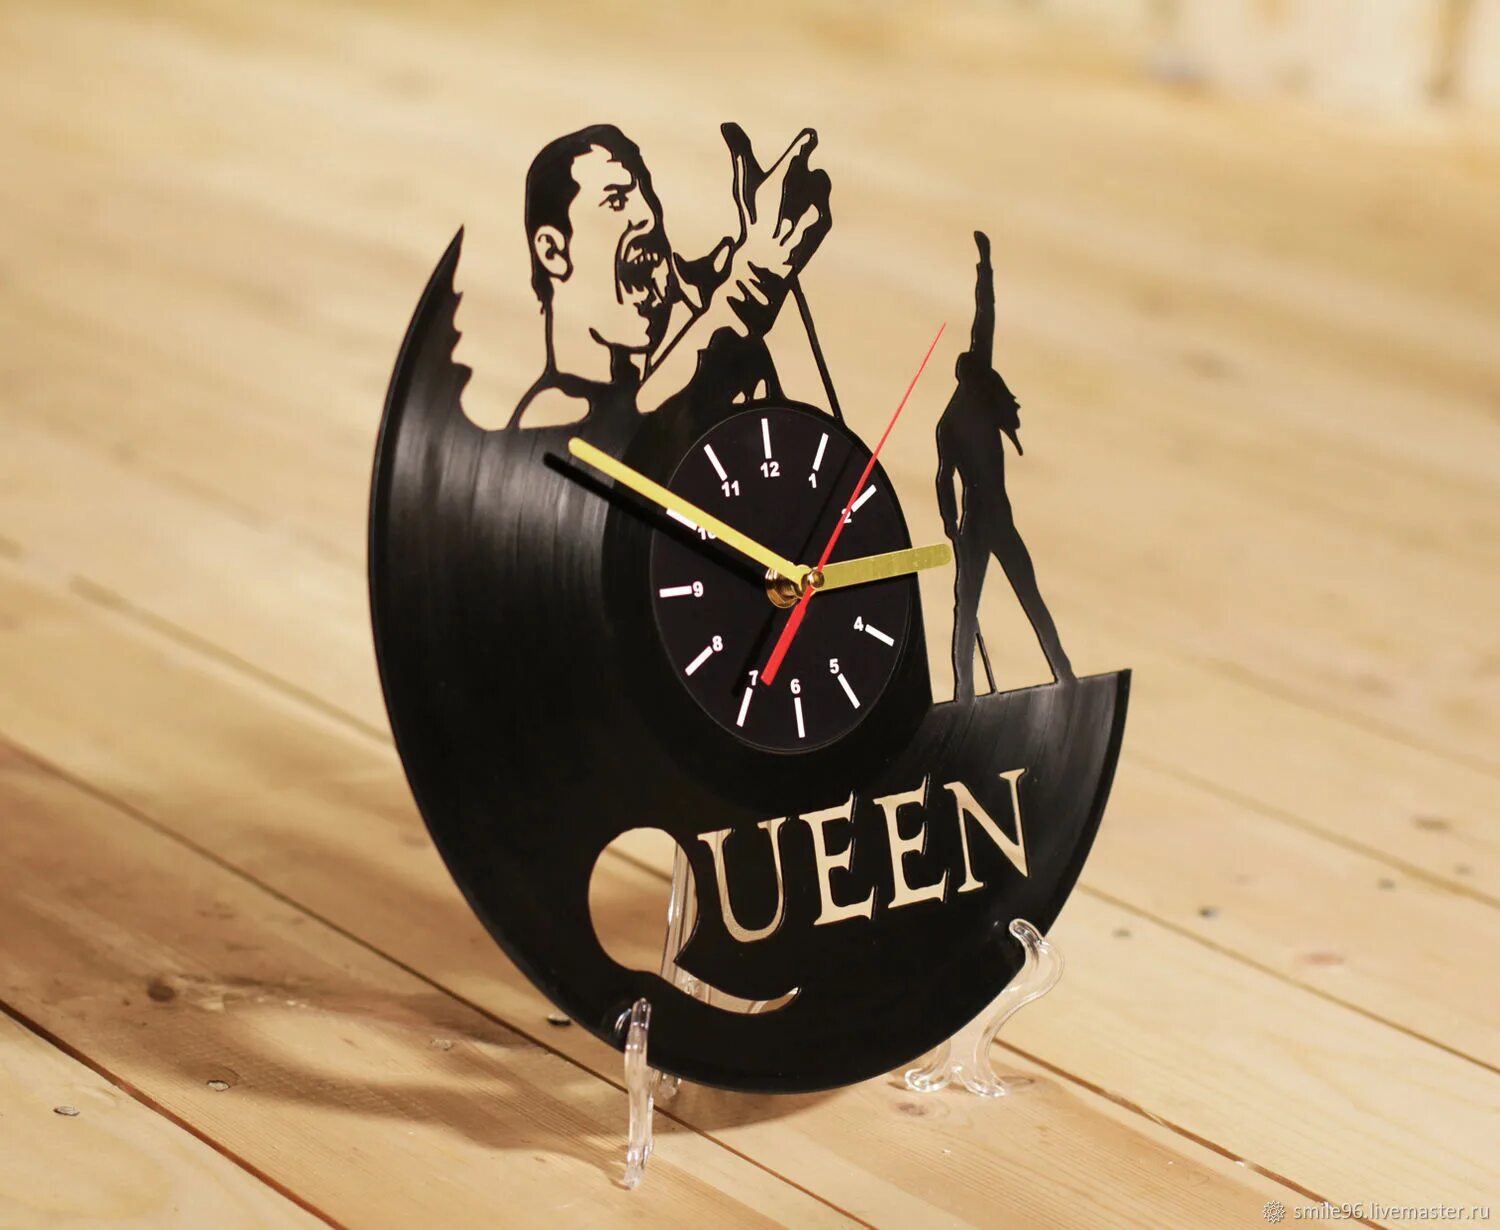 Часы из виниловых пластинок. Часы из виниловых пластинок Квин. Часы из виниловой пластинки Queen. Часы из винила Queen.